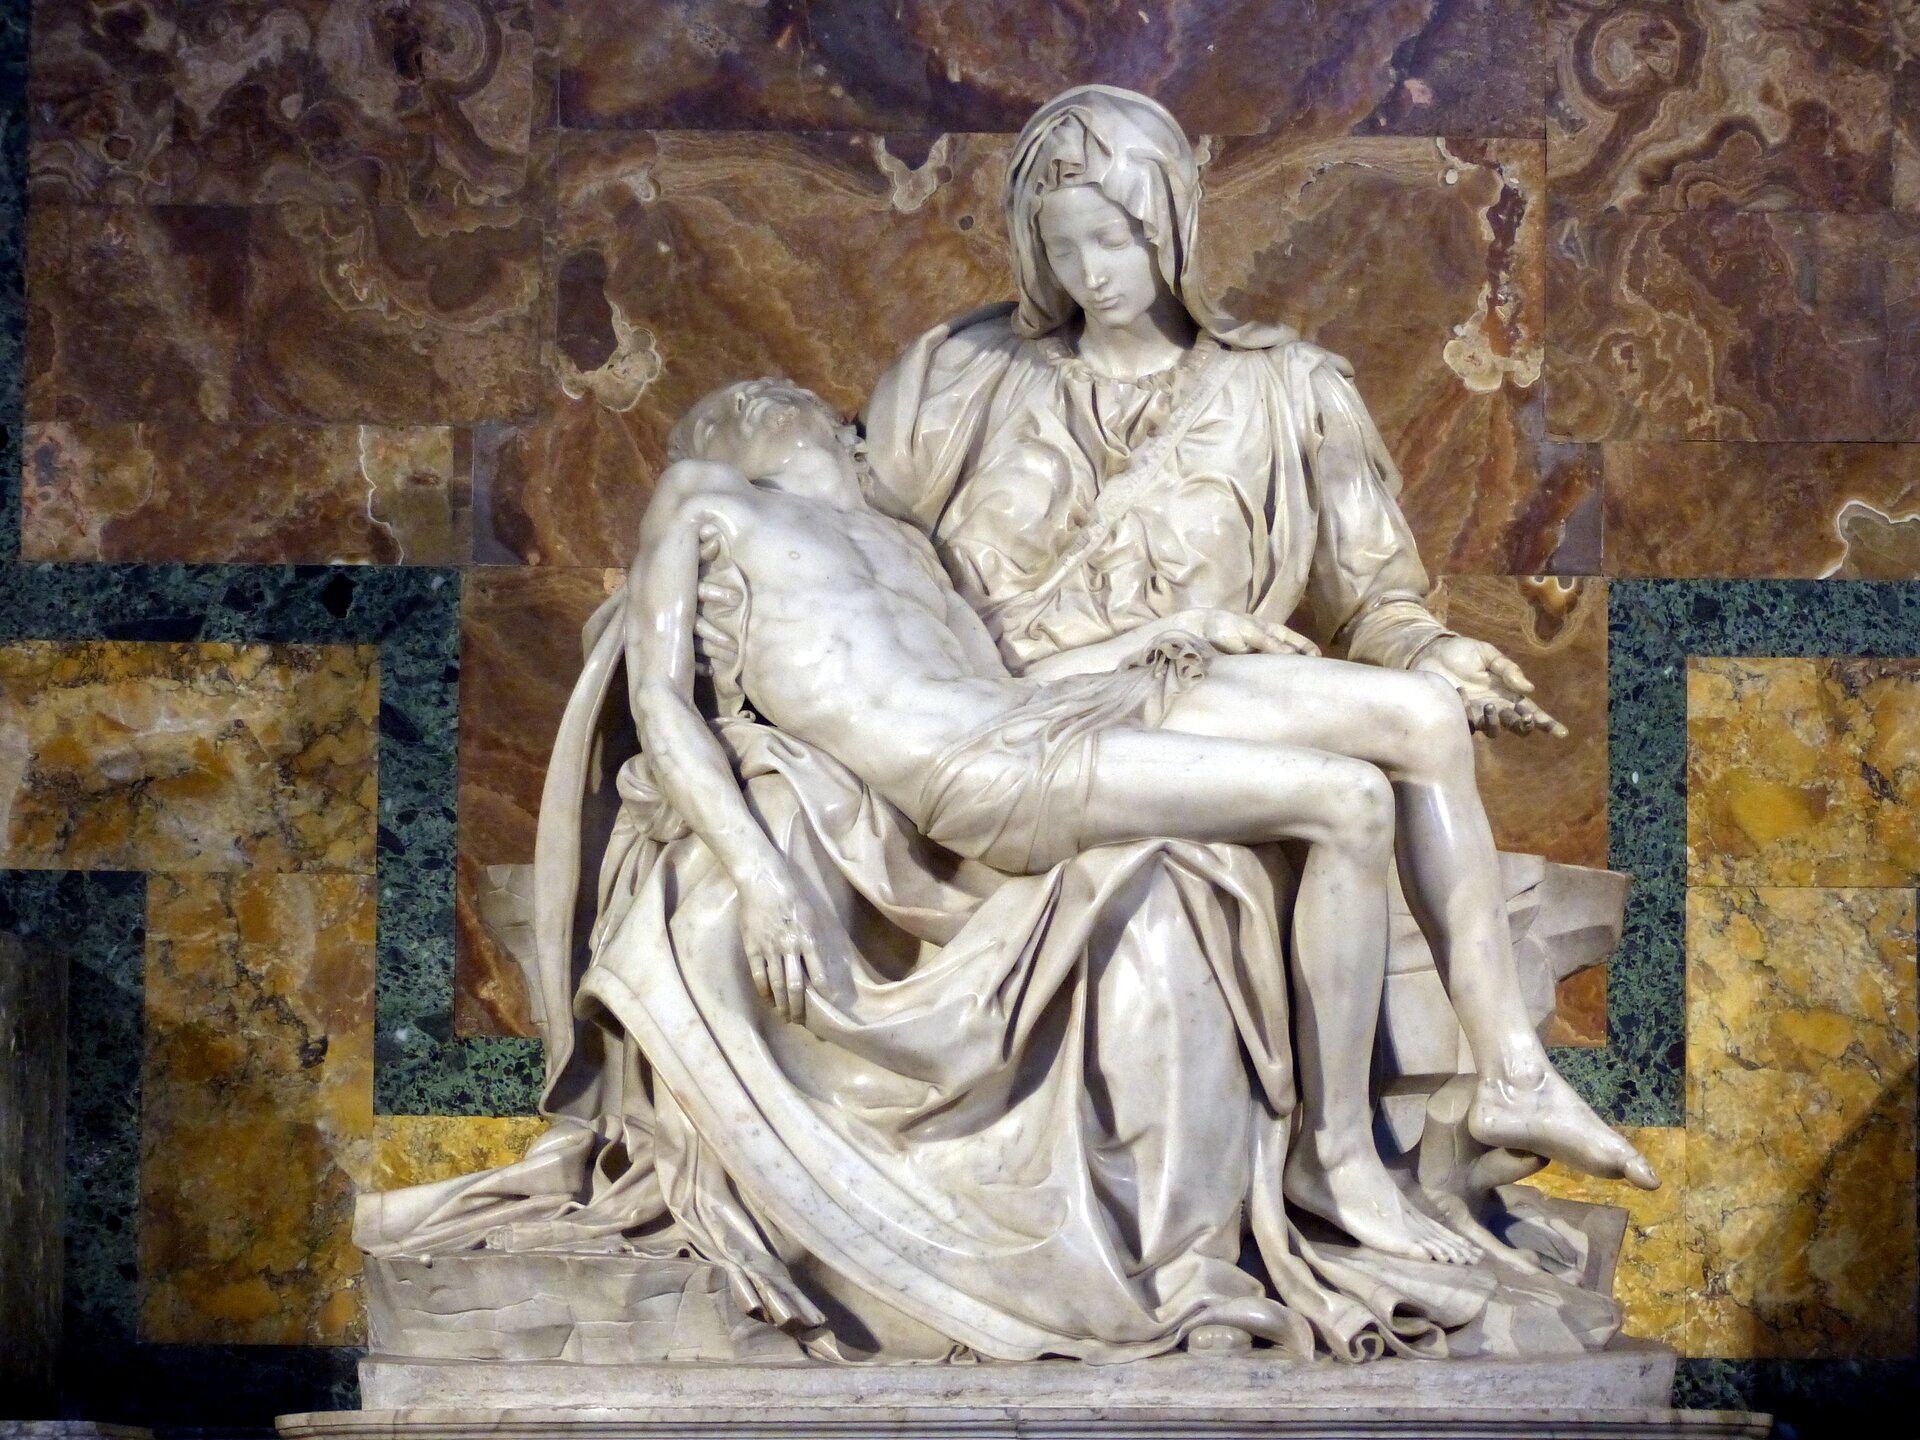 Na zdjęciu rzeźba, która przedstawia Maryję trzymającą w ramionach zdjętego z krzyża Jezusa. Trzyma Go na kolanach. Konstrukcja dzieła ma kształt piramidy, której wierzchołek stanowi głowa Marii. Rzeźba rozszerza się stopniowo w dół, aż do samej podstawy, na której rozpościera się szata. Postacie nie są proporcjonalne ze względu na trudności z przedstawieniem dorosłego mężczyzny trzymanego na kolanach kobiety. Postać Madonny jest ukryta pod fałdami szat, przez to wspomniana dysproporcja nie rzuca się w oczy i figury wyglądają naturalnie. Ślady po ukrzyżowaniu są ograniczone do niewielkich ran po gwoździach na ręce Jezusa i zaznaczenia rany w boku Jezusa. Ślady po gwoździach w stopach nie przechodzą „na wylot” do zewnętrznej części stóp. Madonna jest przedstawiona jako bardzo młoda kobieta. Na piersi Marii szarfa, a tam mało widoczny napis "MICHAEL ANGELUS BONAROTUS FLORENT FACIBAT" (tłum.: uczynił to Florentczyk, Michał Anioł Buonarroti). 